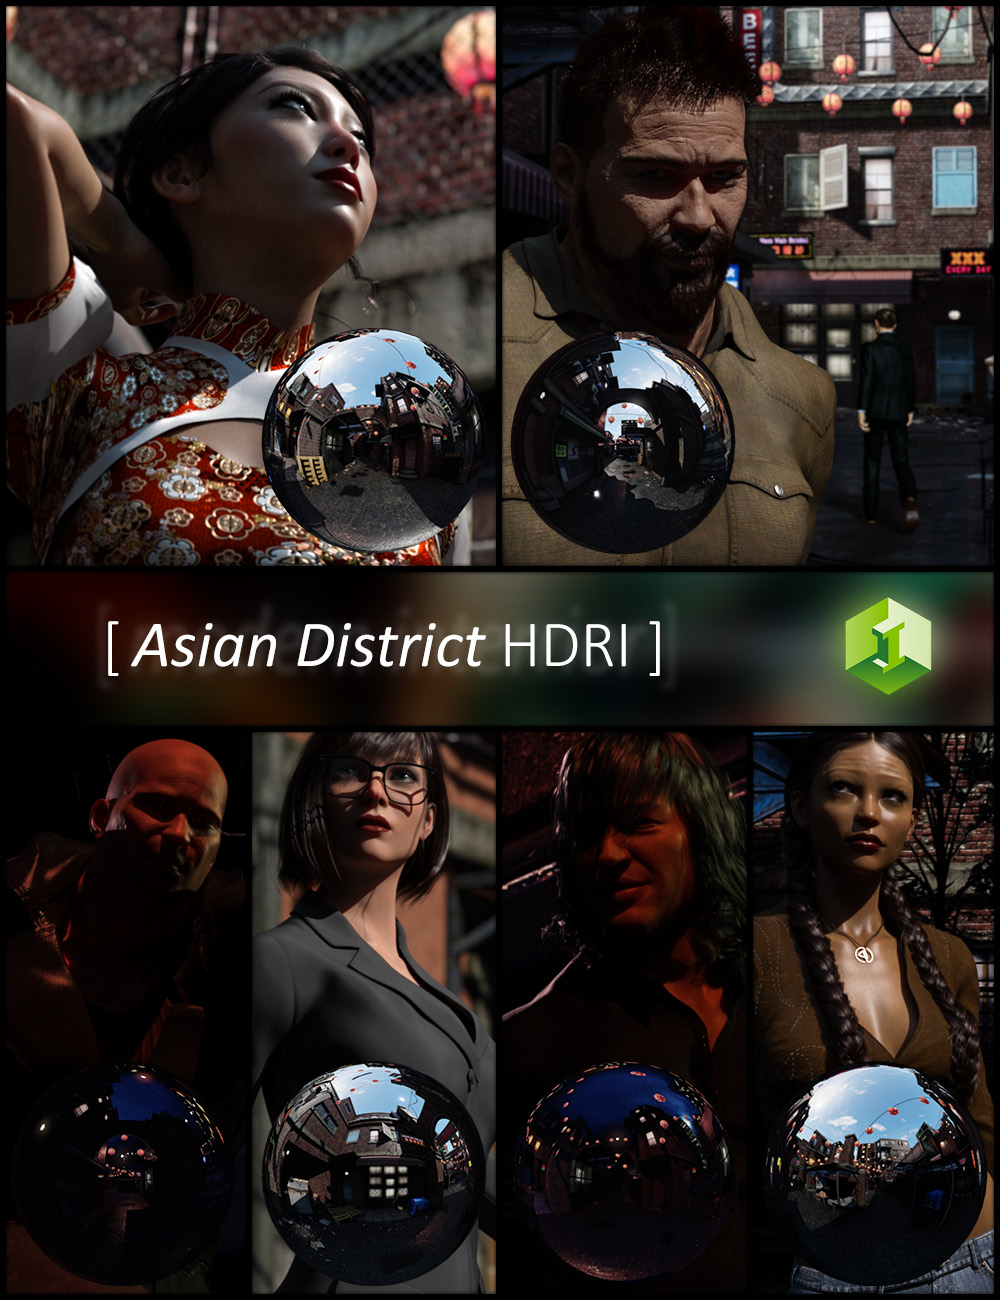 Asian District HDRI by: JDA HDRI, 3D Models by Daz 3D